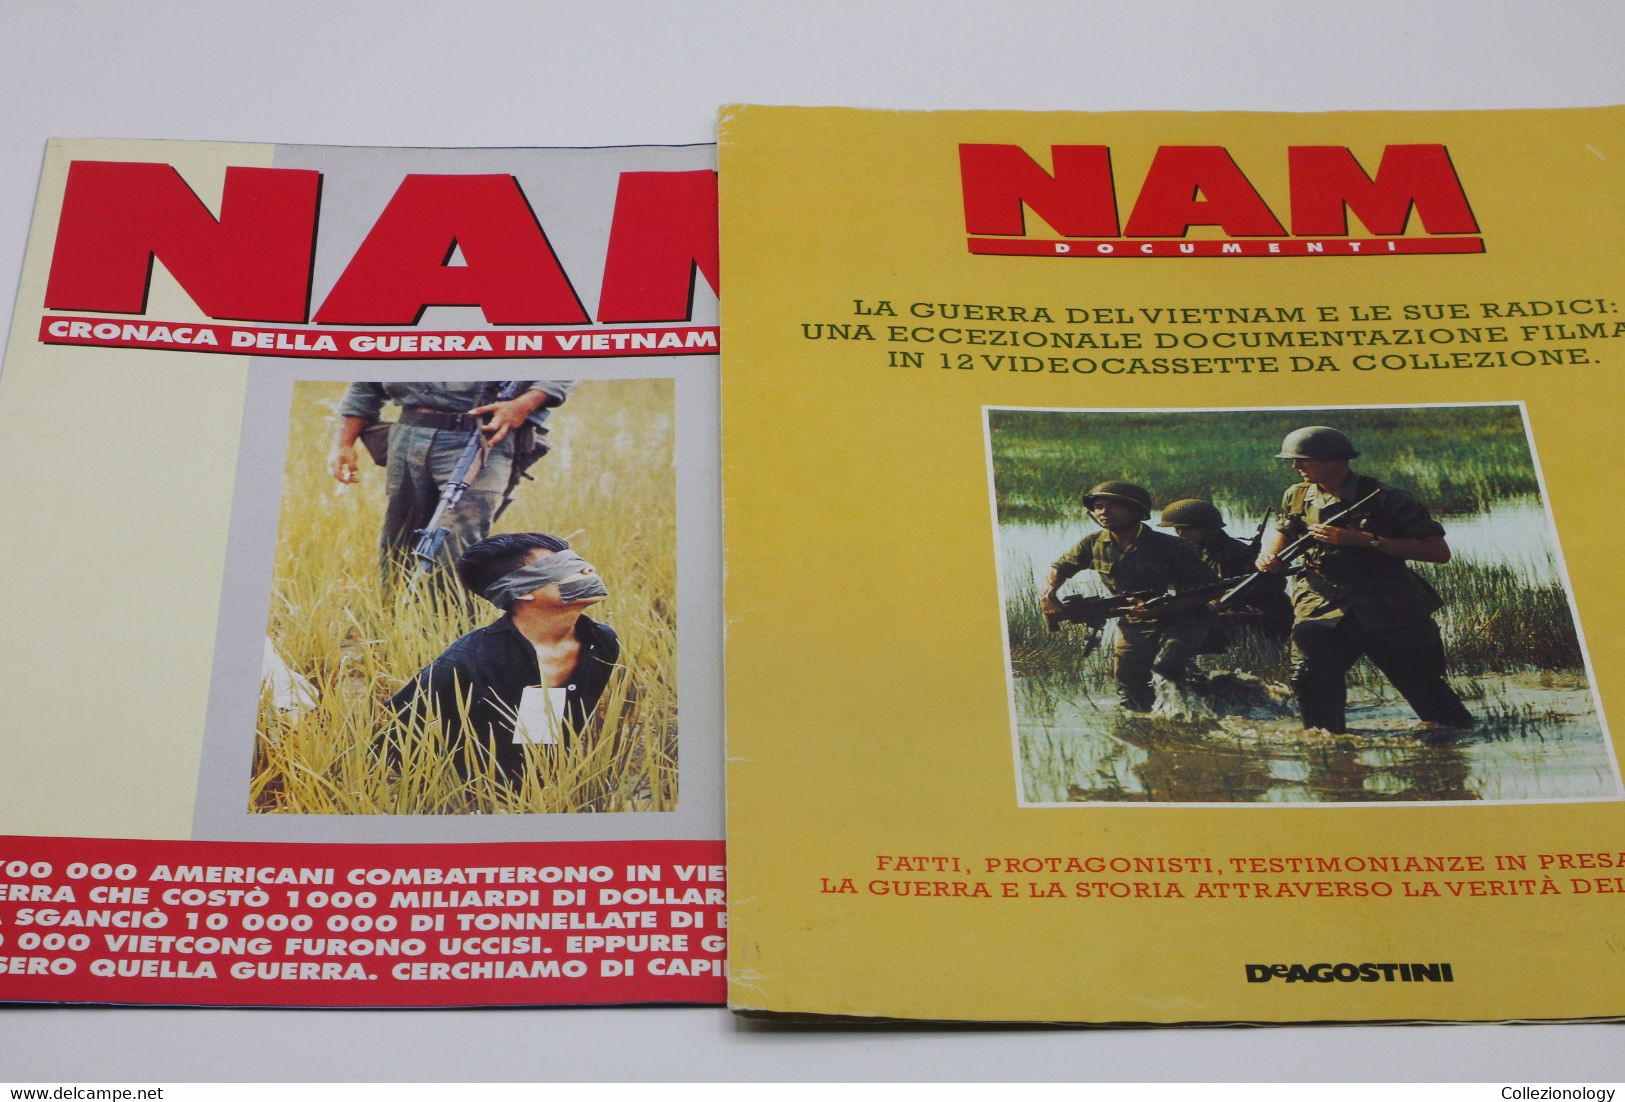 NAM CRONACA DELLA GUERRA IN VIETNAM 1965-1975  #1 DE AGOSTINI ATLAS 1998 CON POSTER Chronicle Of Vietnam War Guerre - Italiaans